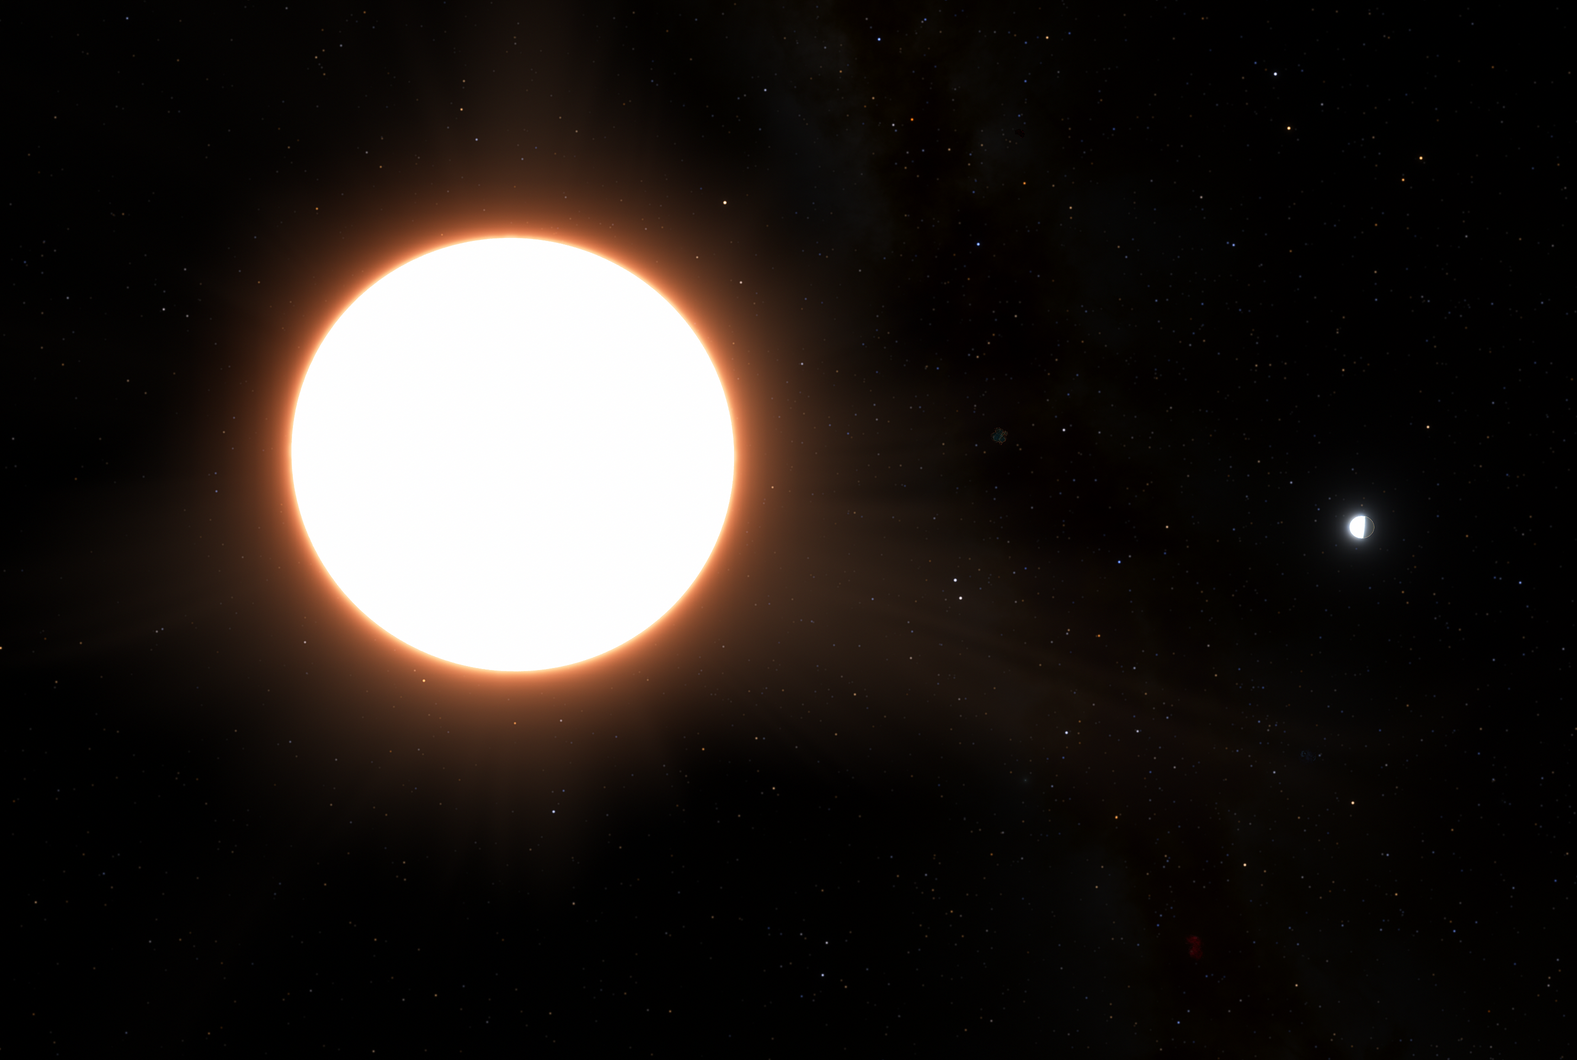 exoplanet-ltt9779-b-orbiting-its-host-star-pillars